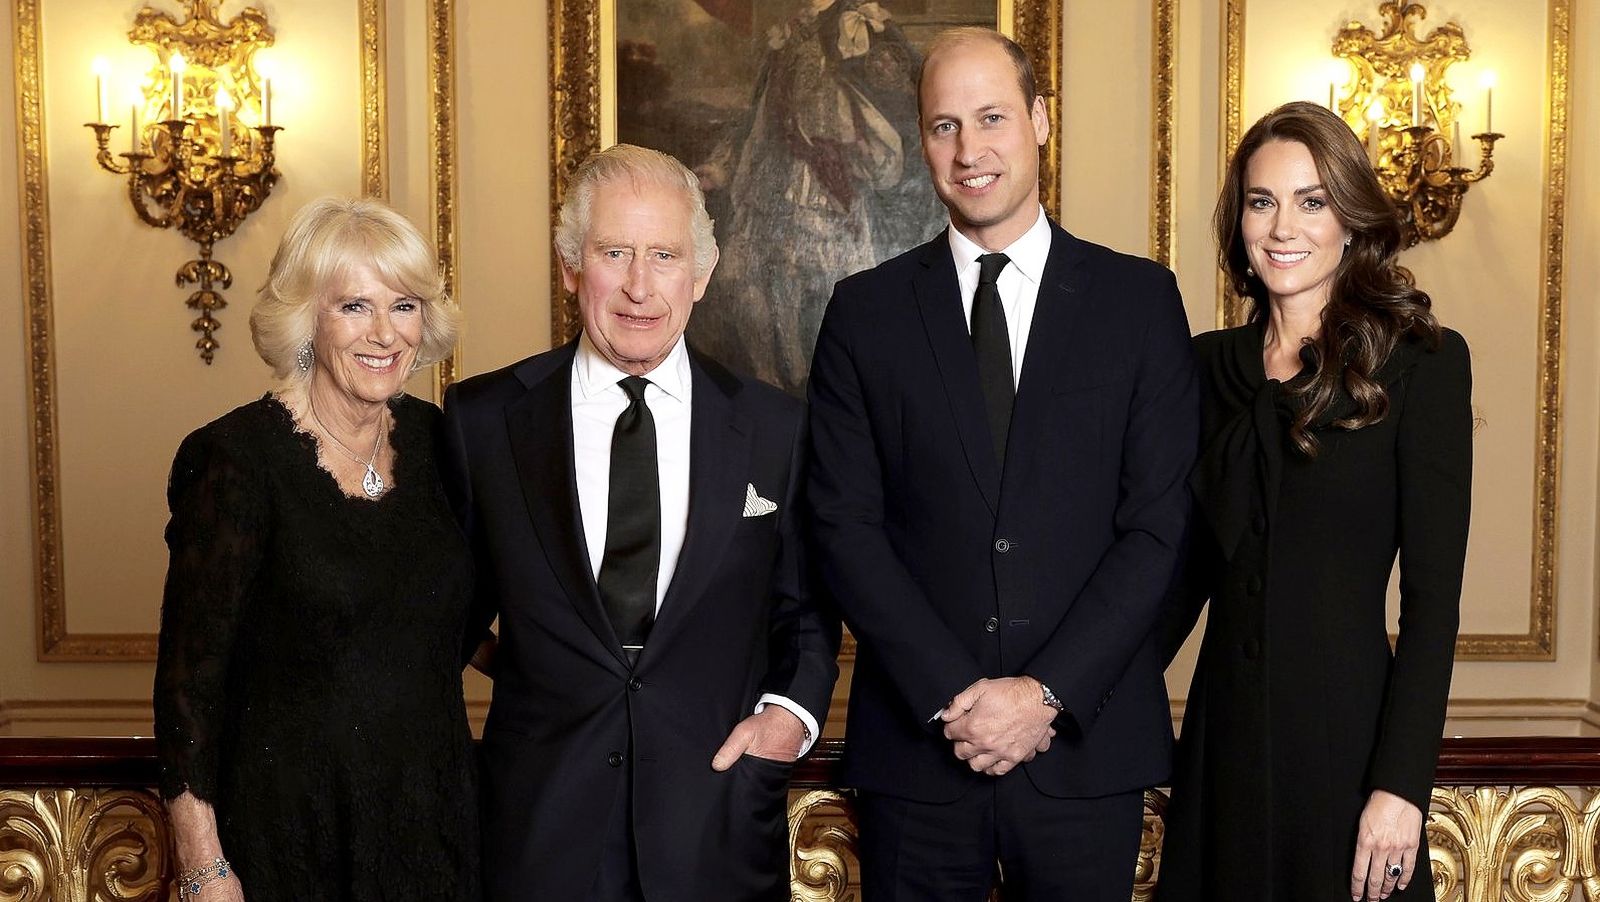 Royal news: новое фото короля Карла III, Камиллы, принца и принцессы Уэльских